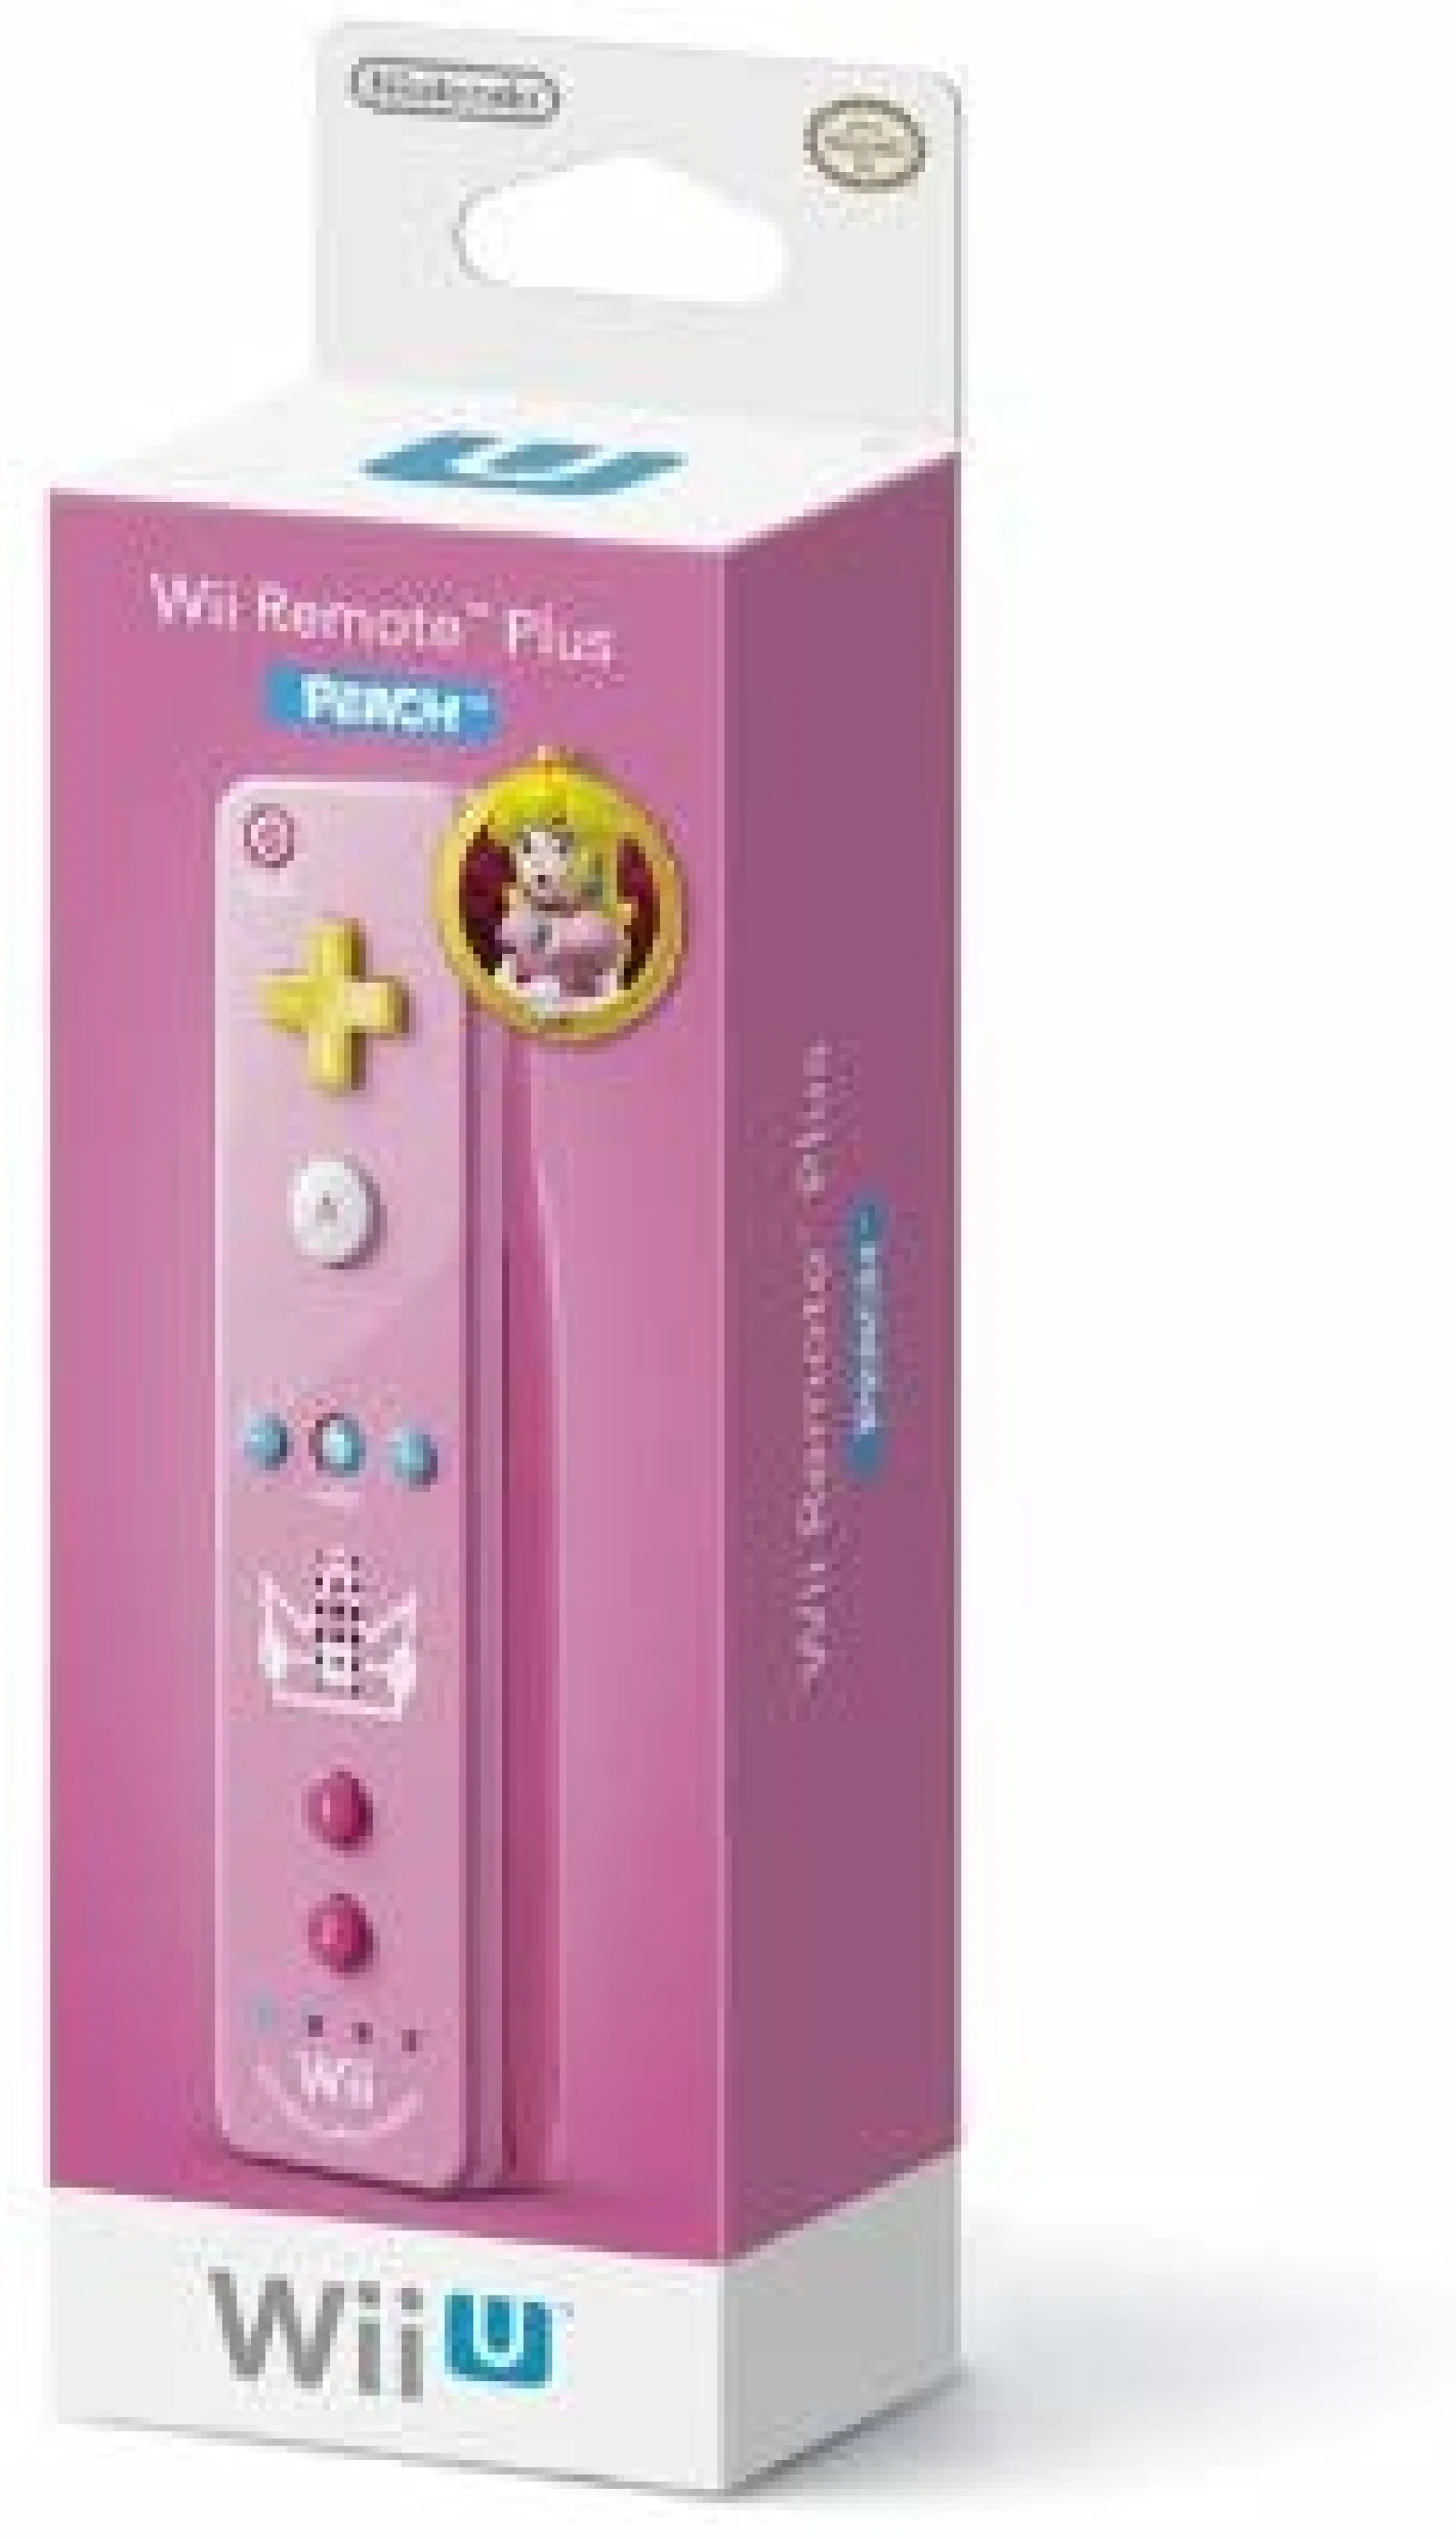  Nintendo Wii Peach Wiimote [AUS]